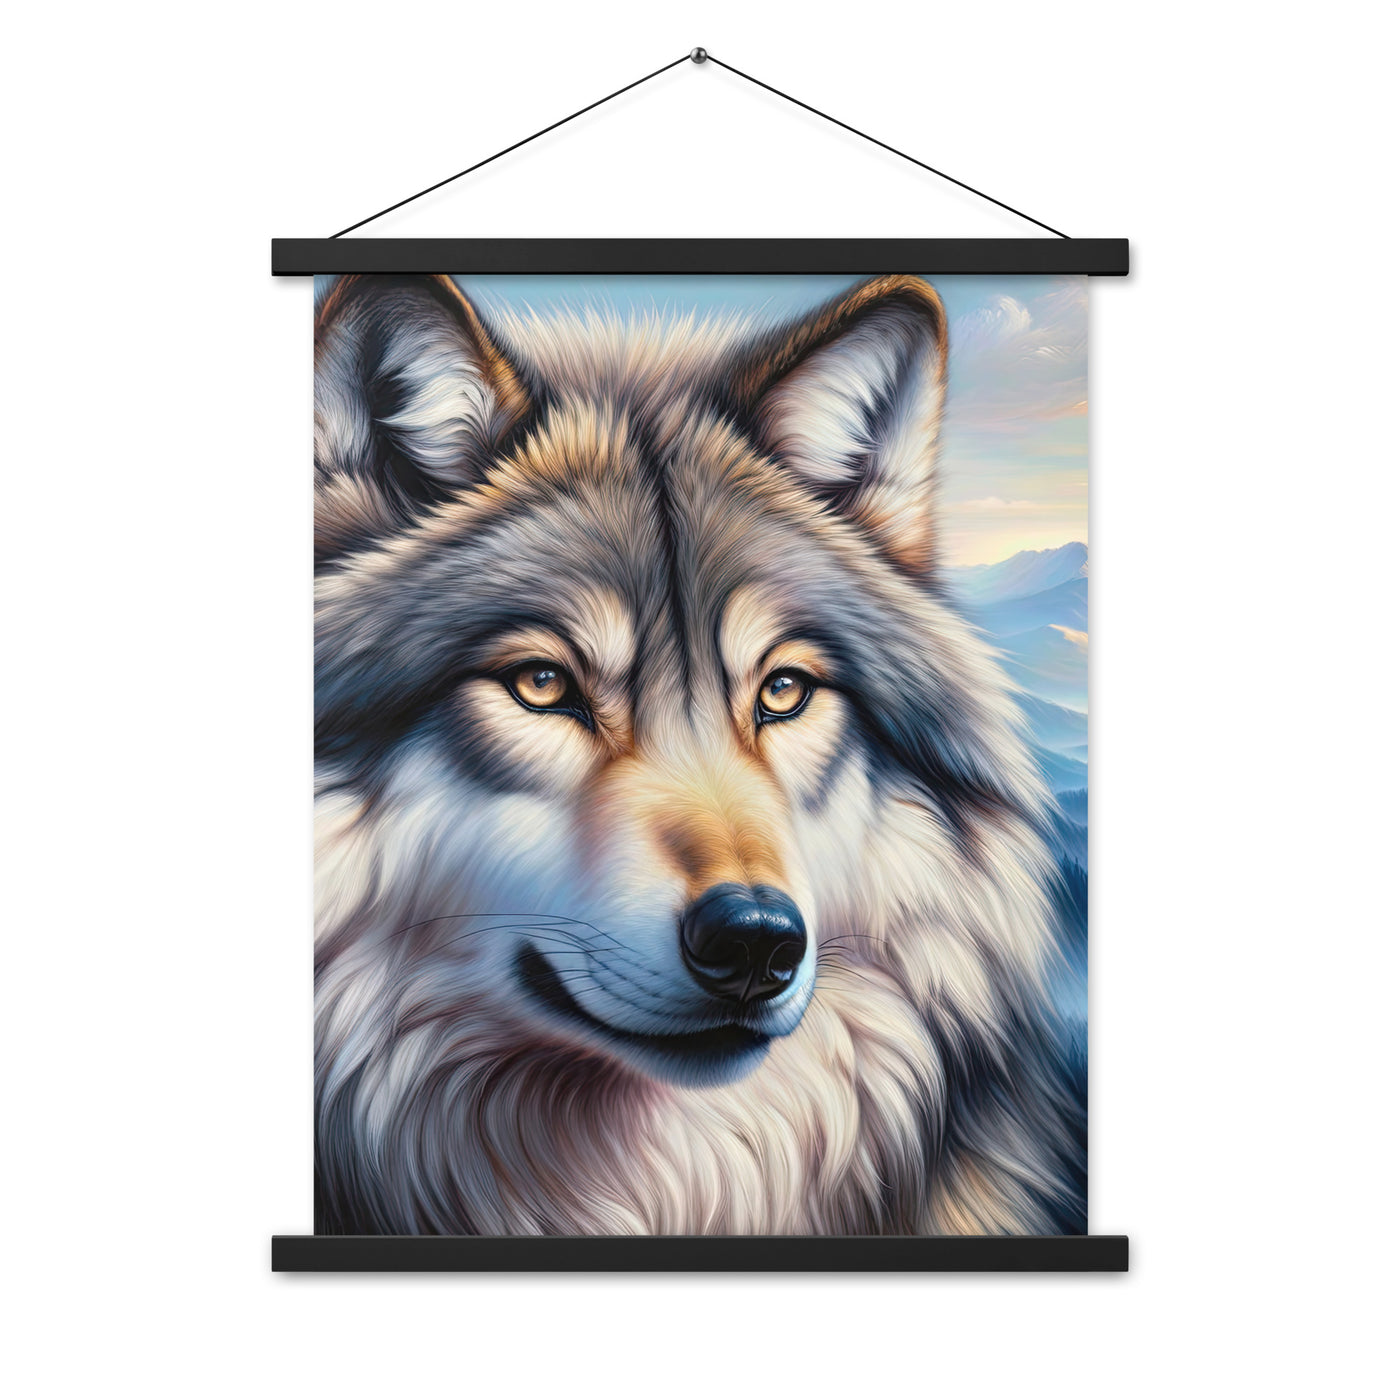 Ölgemäldeporträt eines majestätischen Wolfes mit intensiven Augen in der Berglandschaft (AN) - Premium Poster mit Aufhängung xxx yyy zzz 45.7 x 61 cm